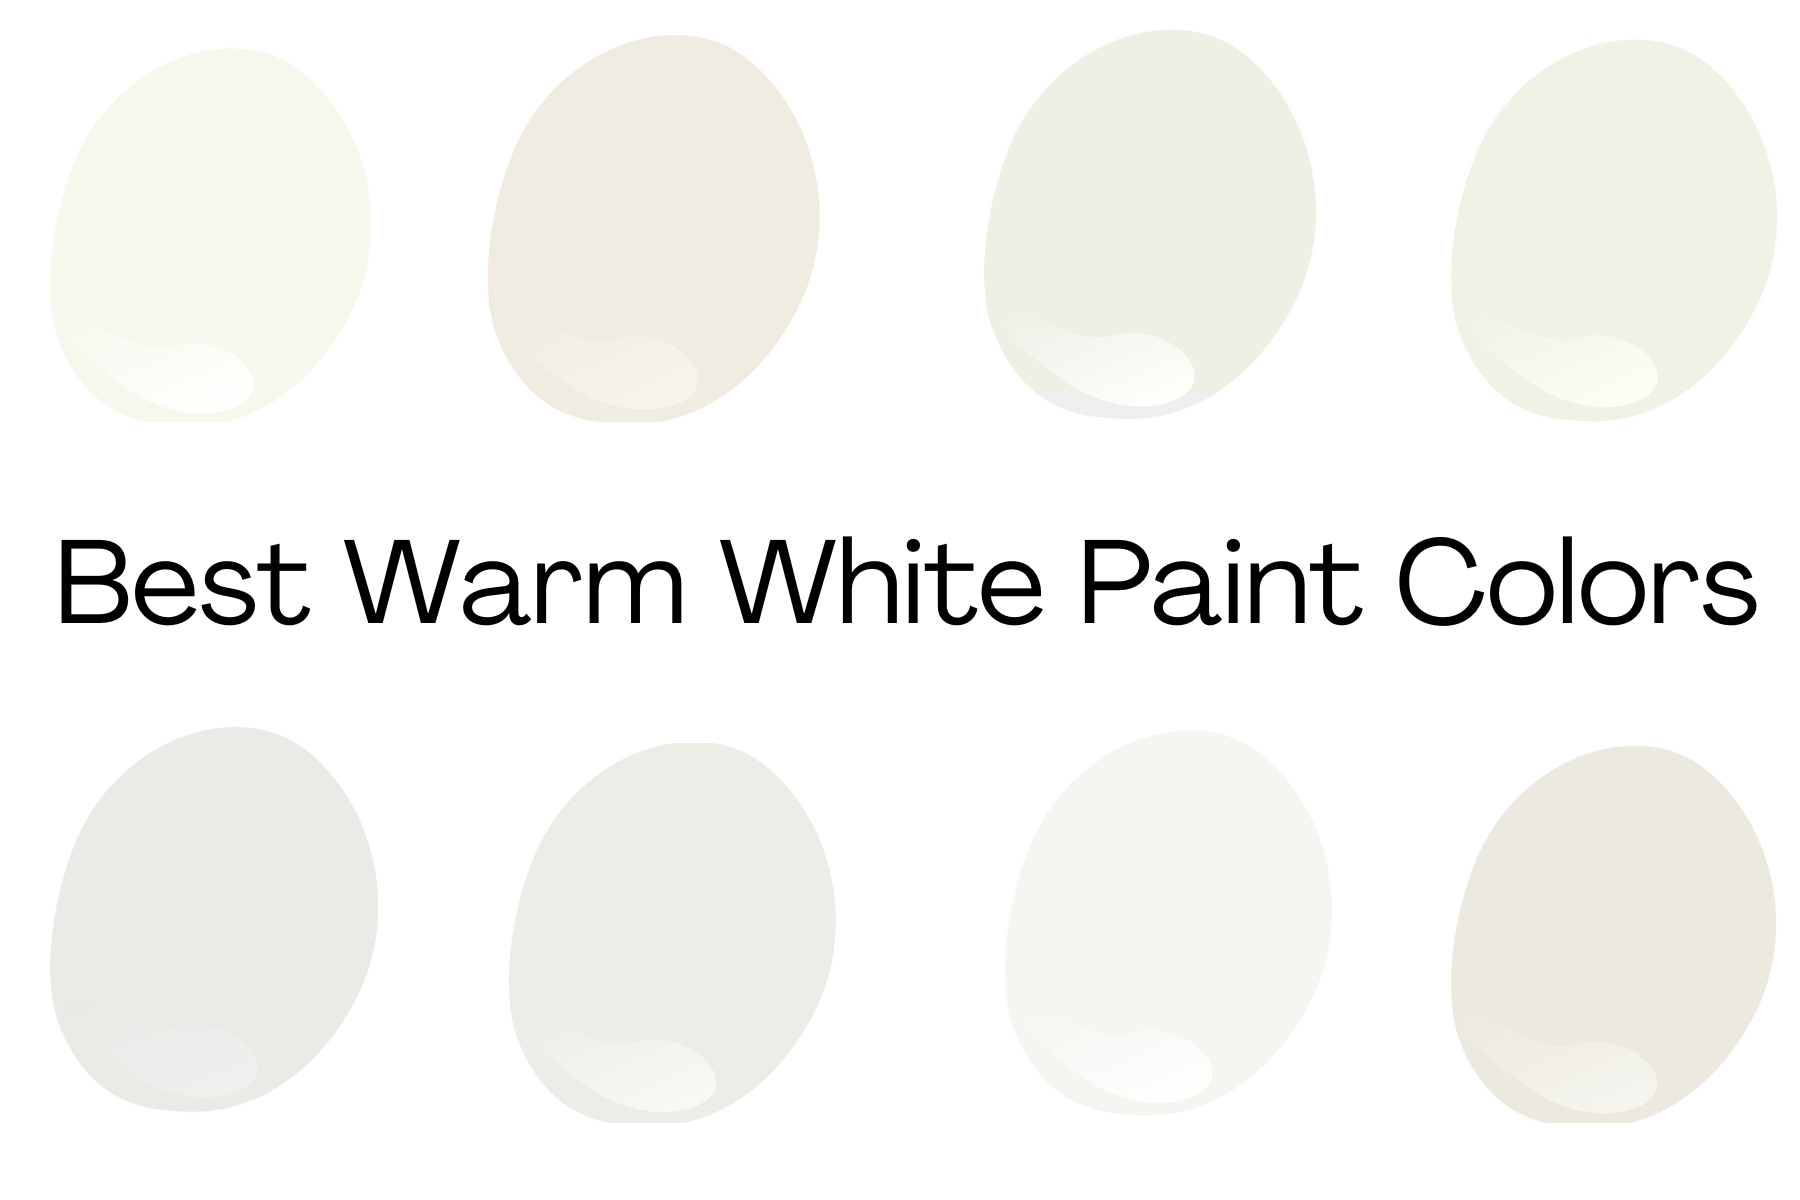 Best Warm White Paint Colors